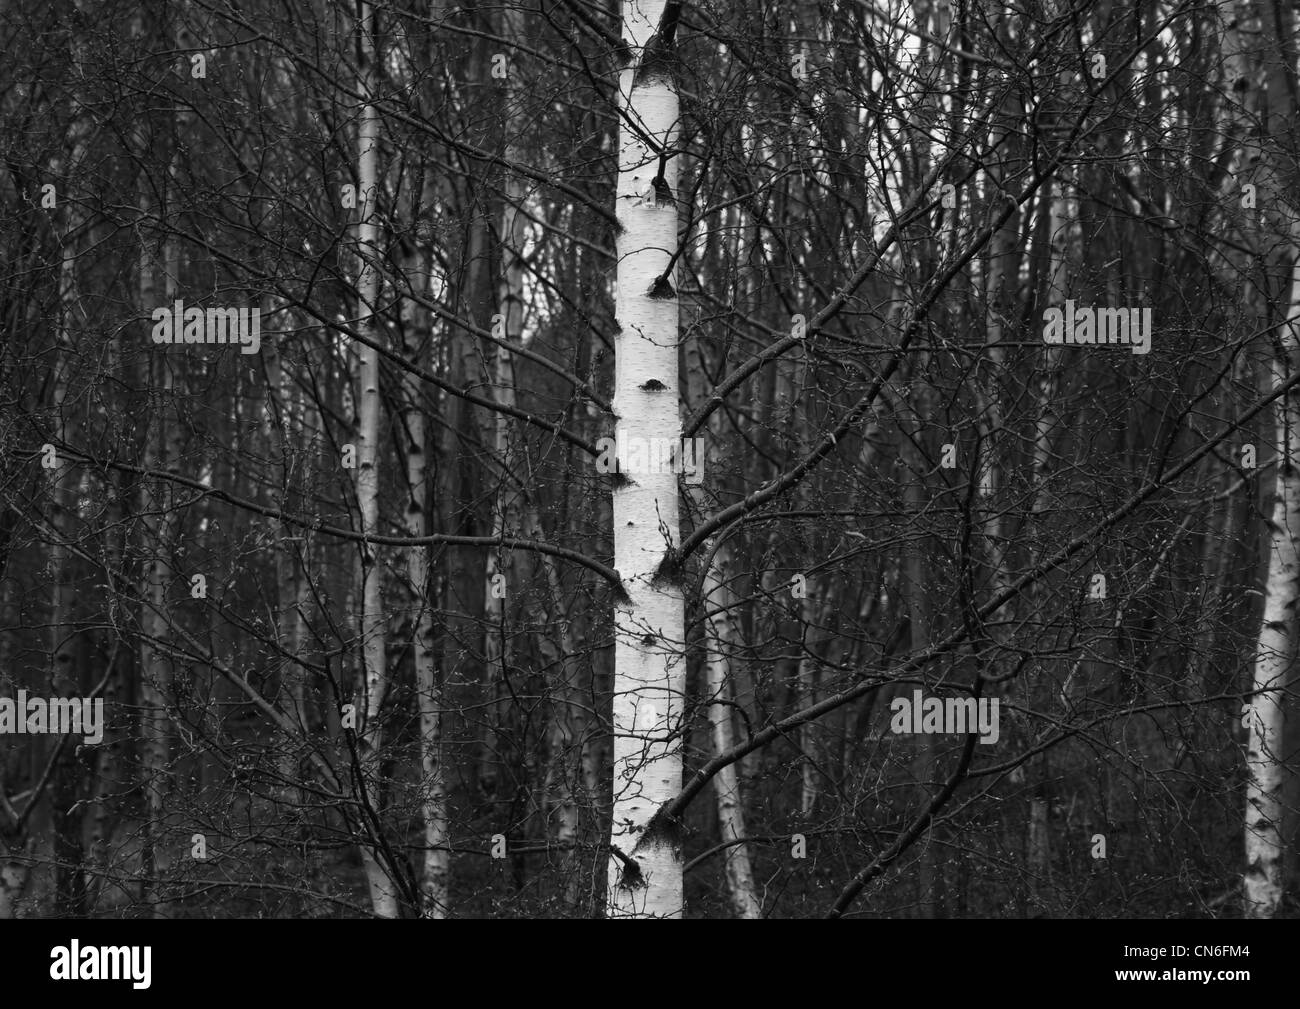 Les bouleaux du paysage en noir et blanc. Prise à Glen Gore en Ecosse. Banque D'Images